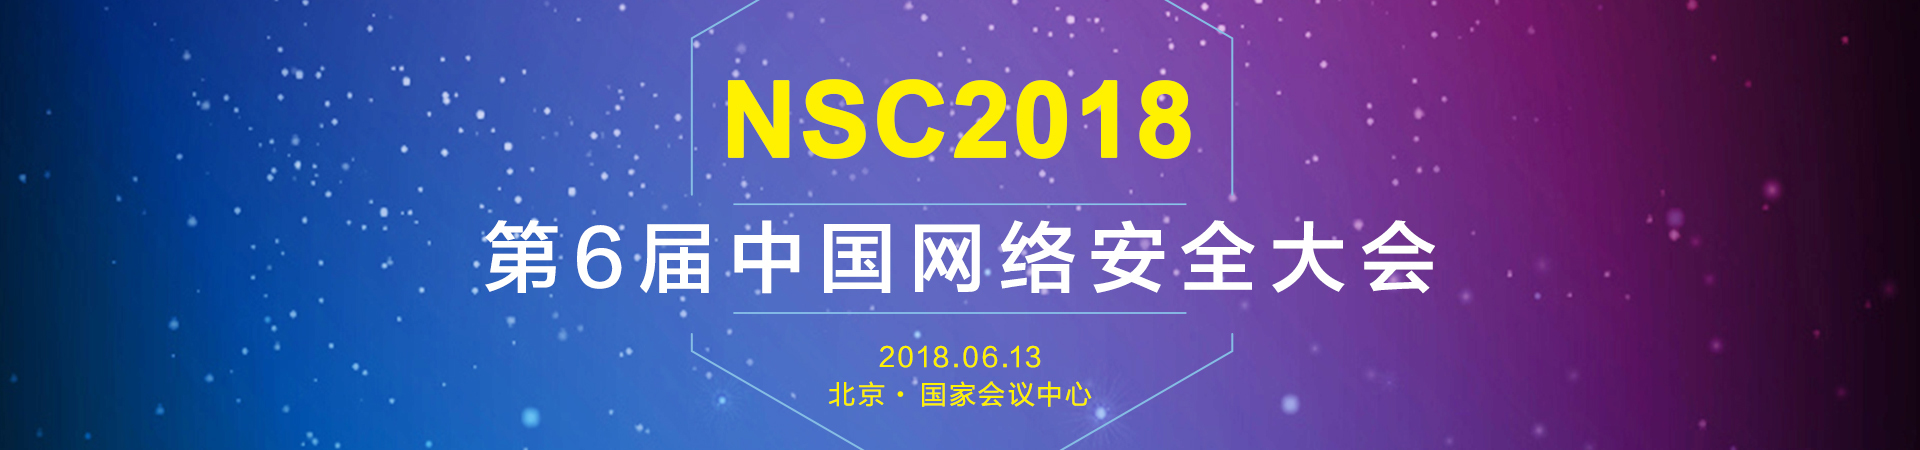 第六届中国网络安全大会（ NSC 2018 ）